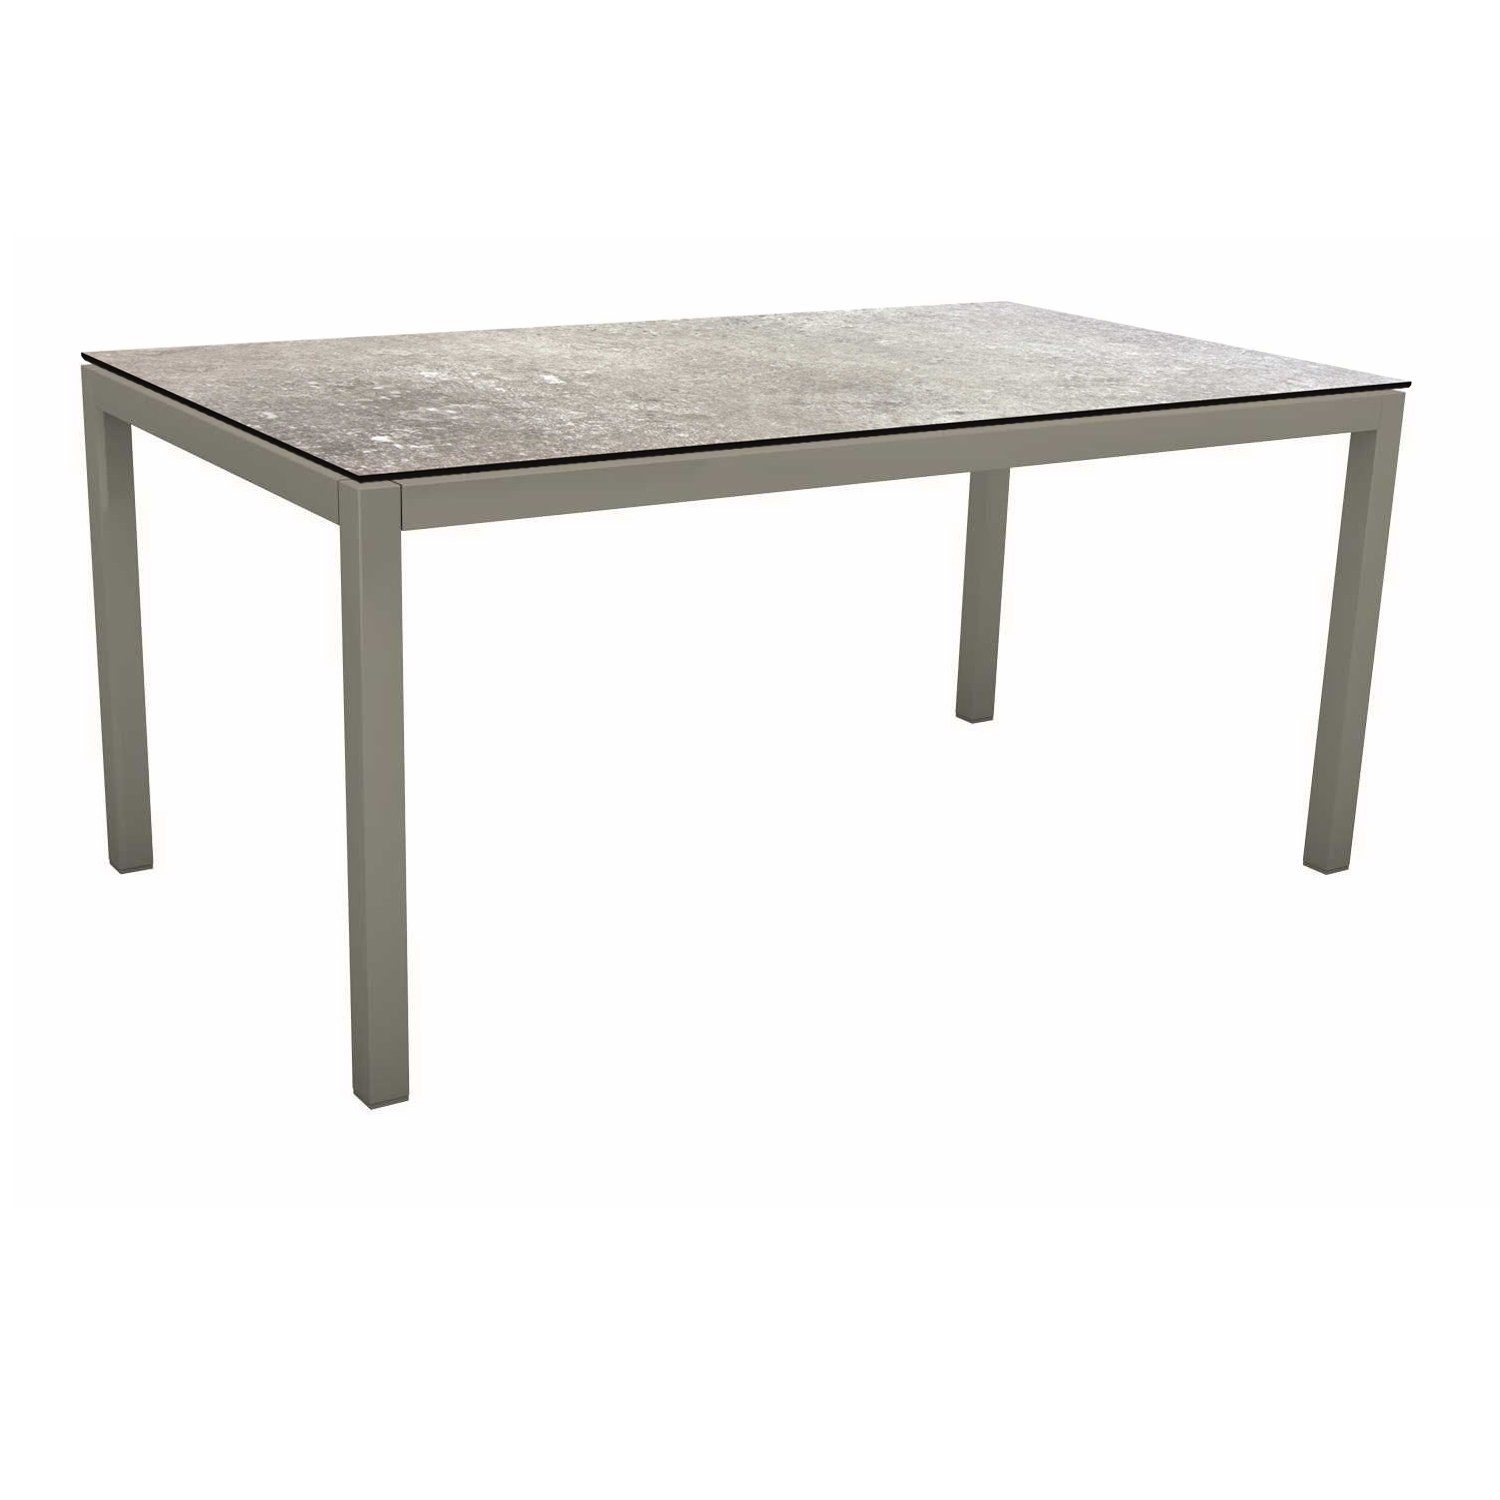 Stern Tischsystem, Gestell Aluminium graphit, Tischplatte HPL Vintage stone, 130x80 cm